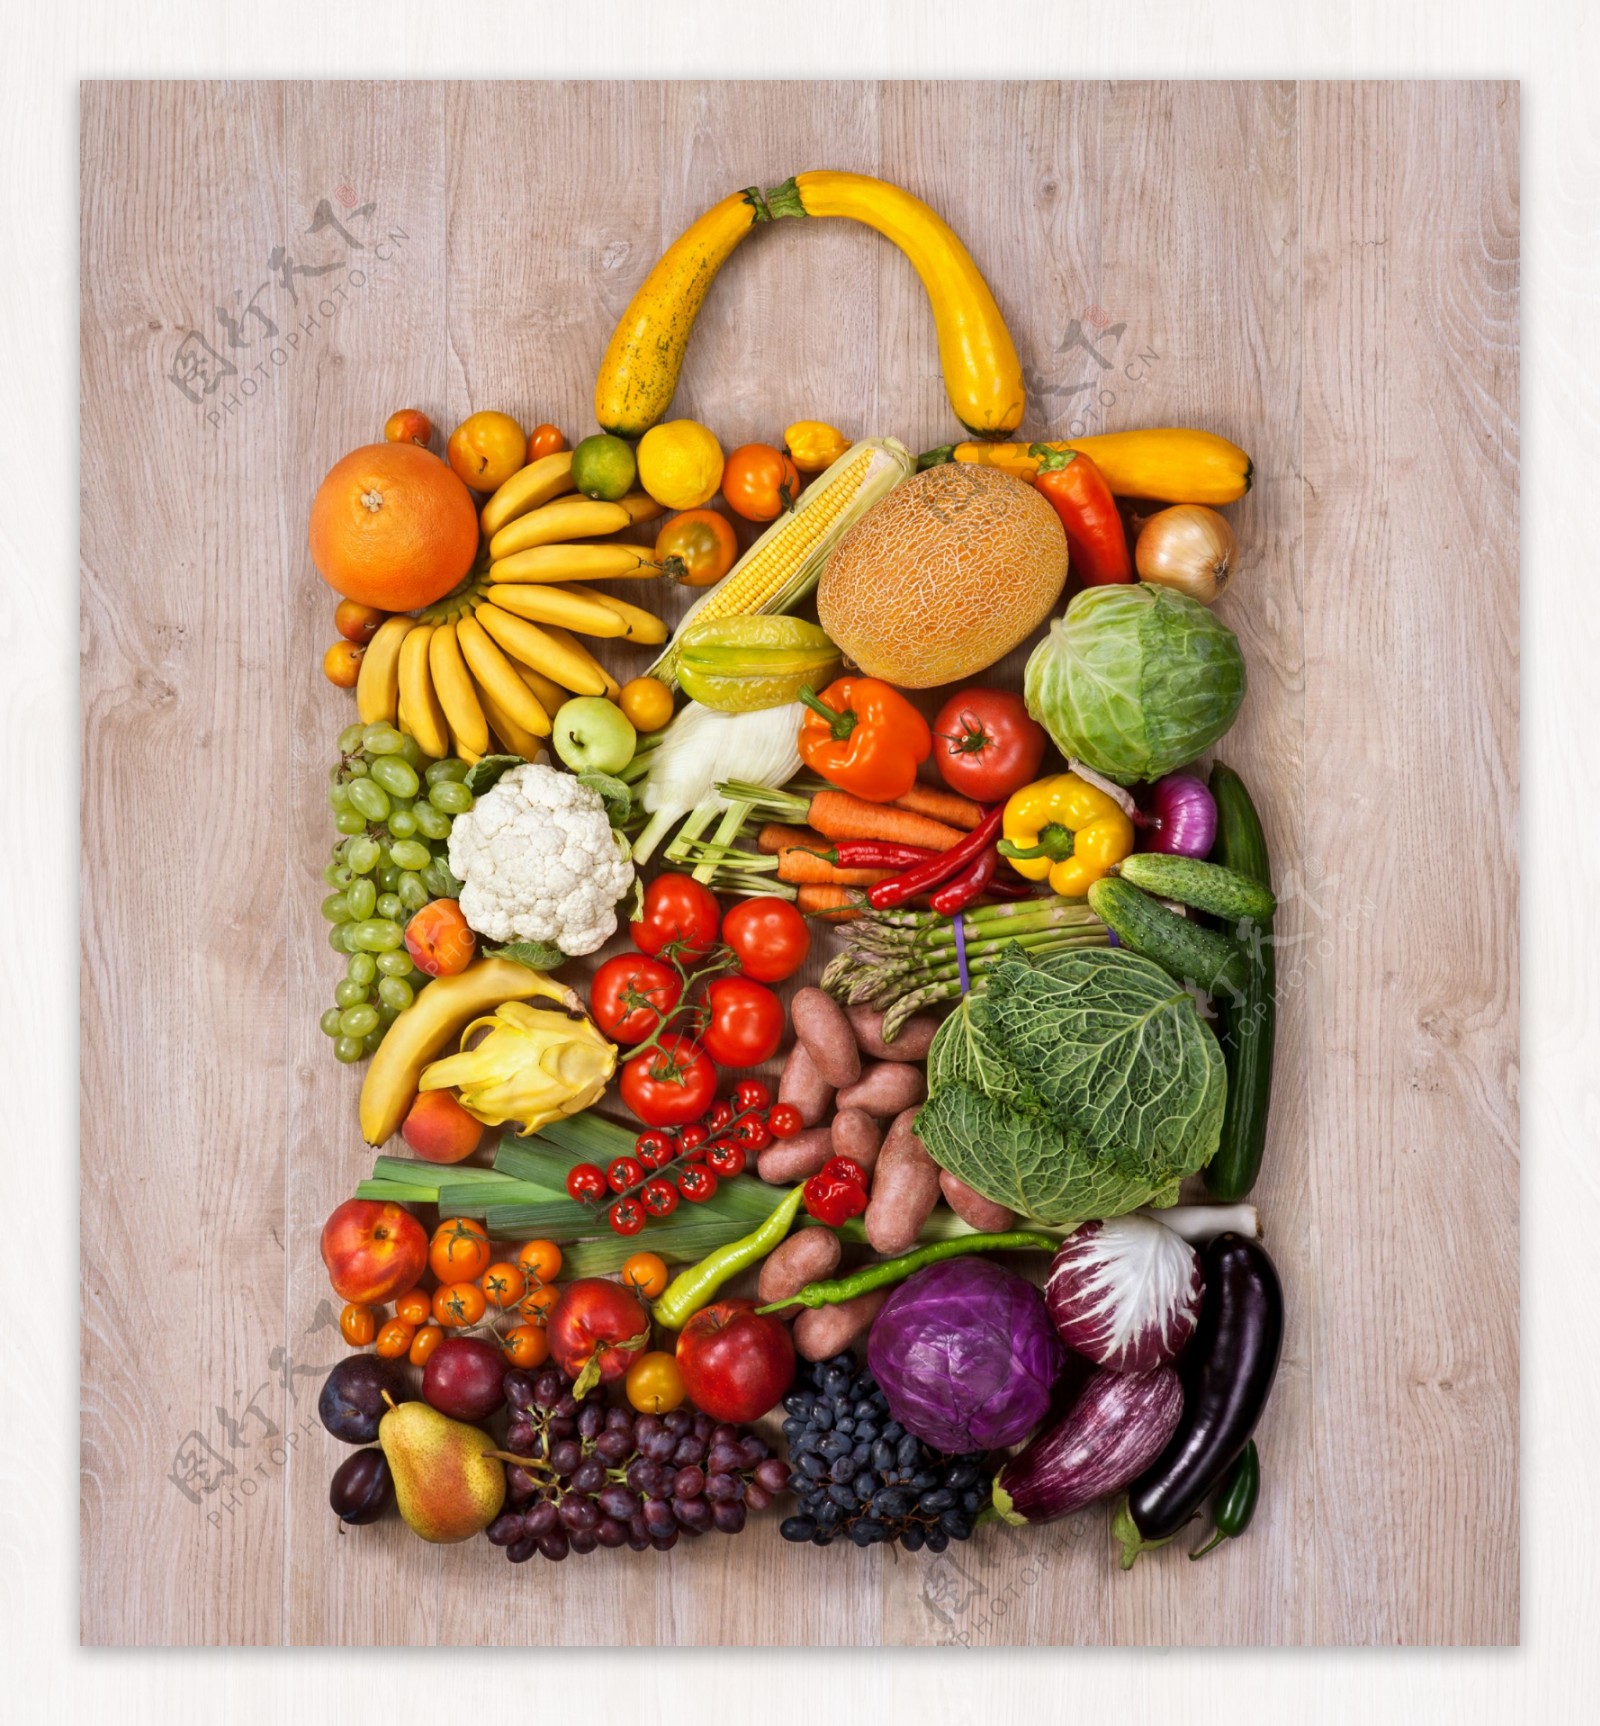 蔬菜水果拼合背包形状高清图片